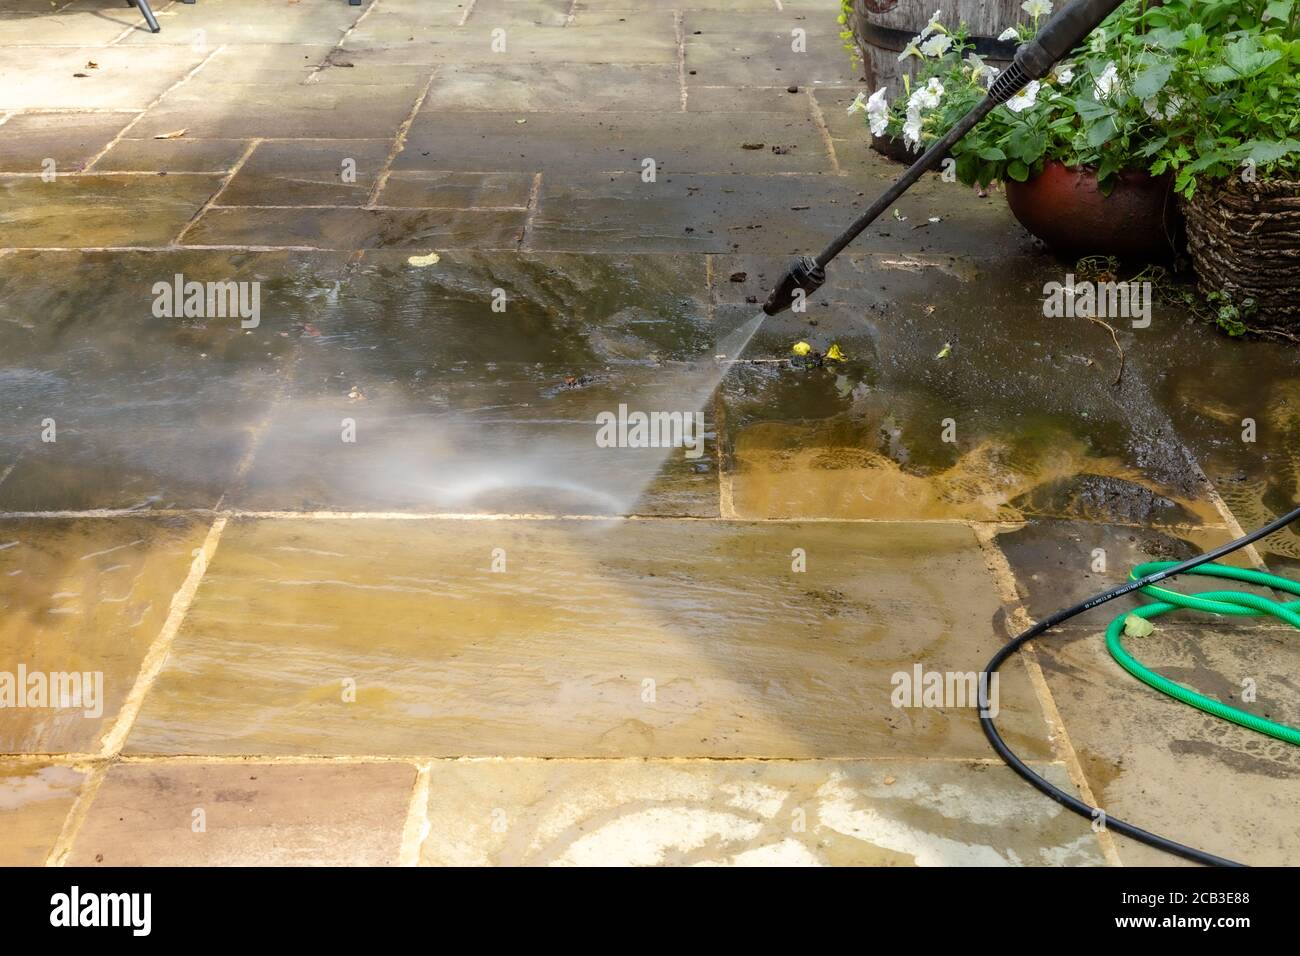 Reinigung Der Terrasse. Druckwäsche auf einer indischen Schieferterrasse. Stockfoto